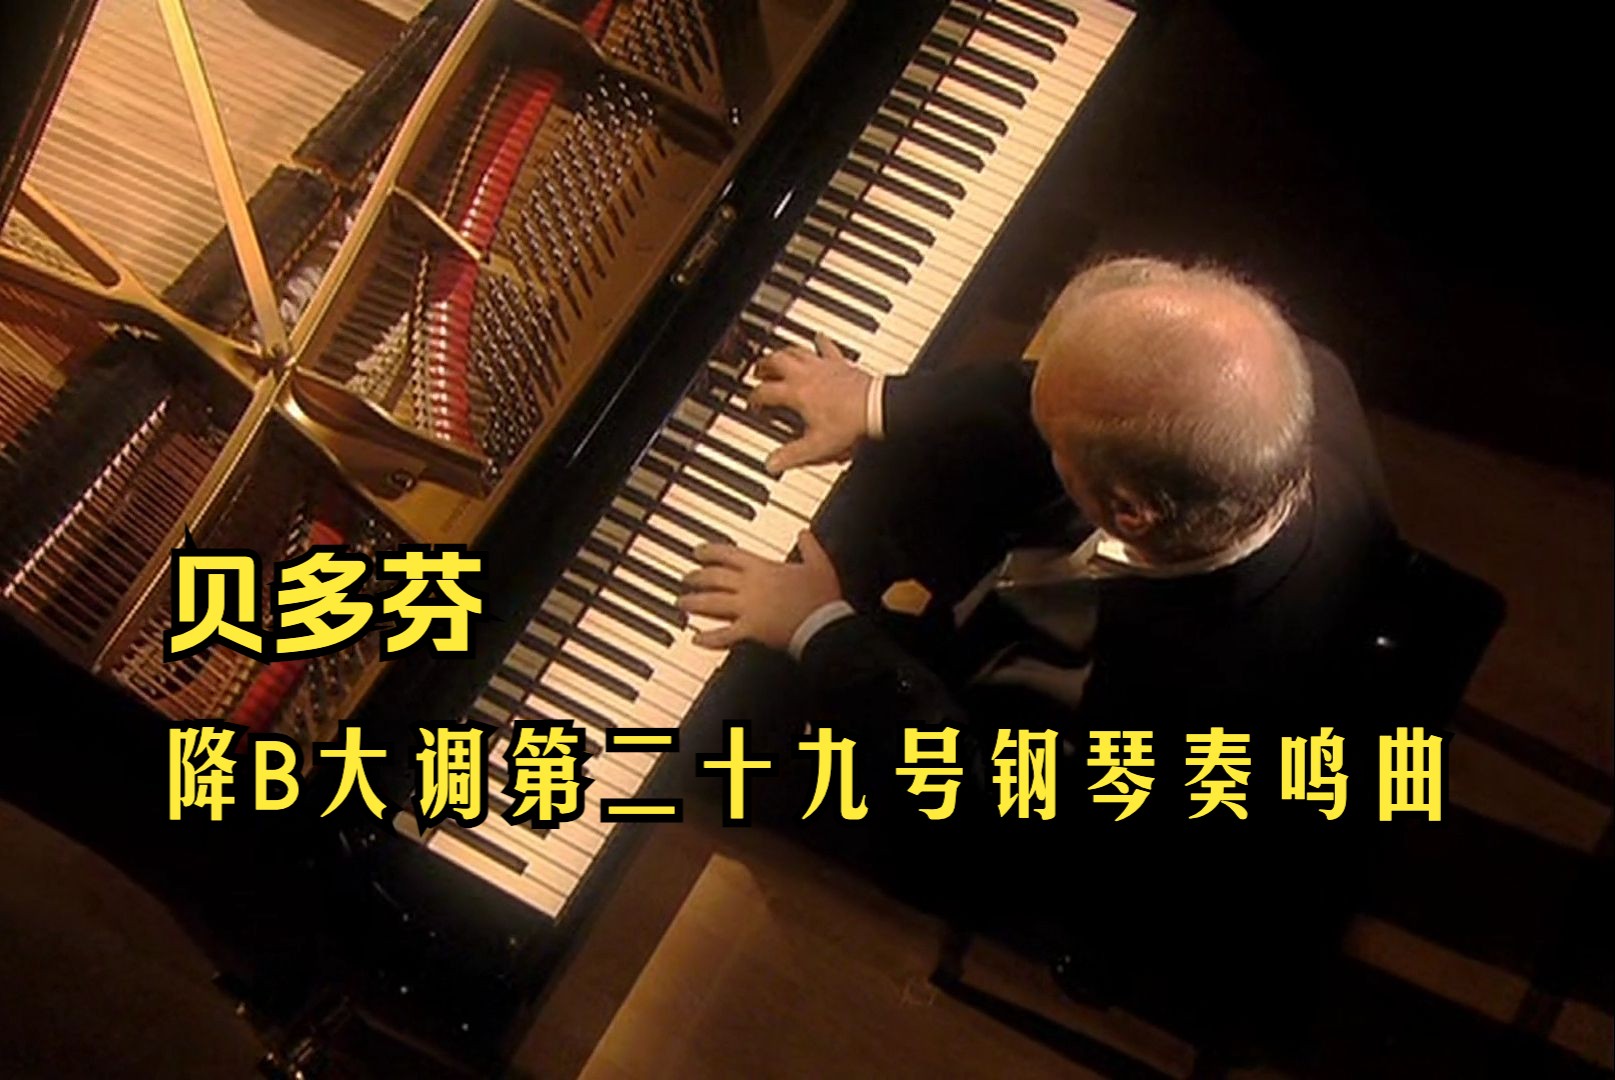 【贝多芬】降B大调第二十九号钢琴奏鸣曲「槌子键琴」Op. 106 (巴伦博伊姆演奏)